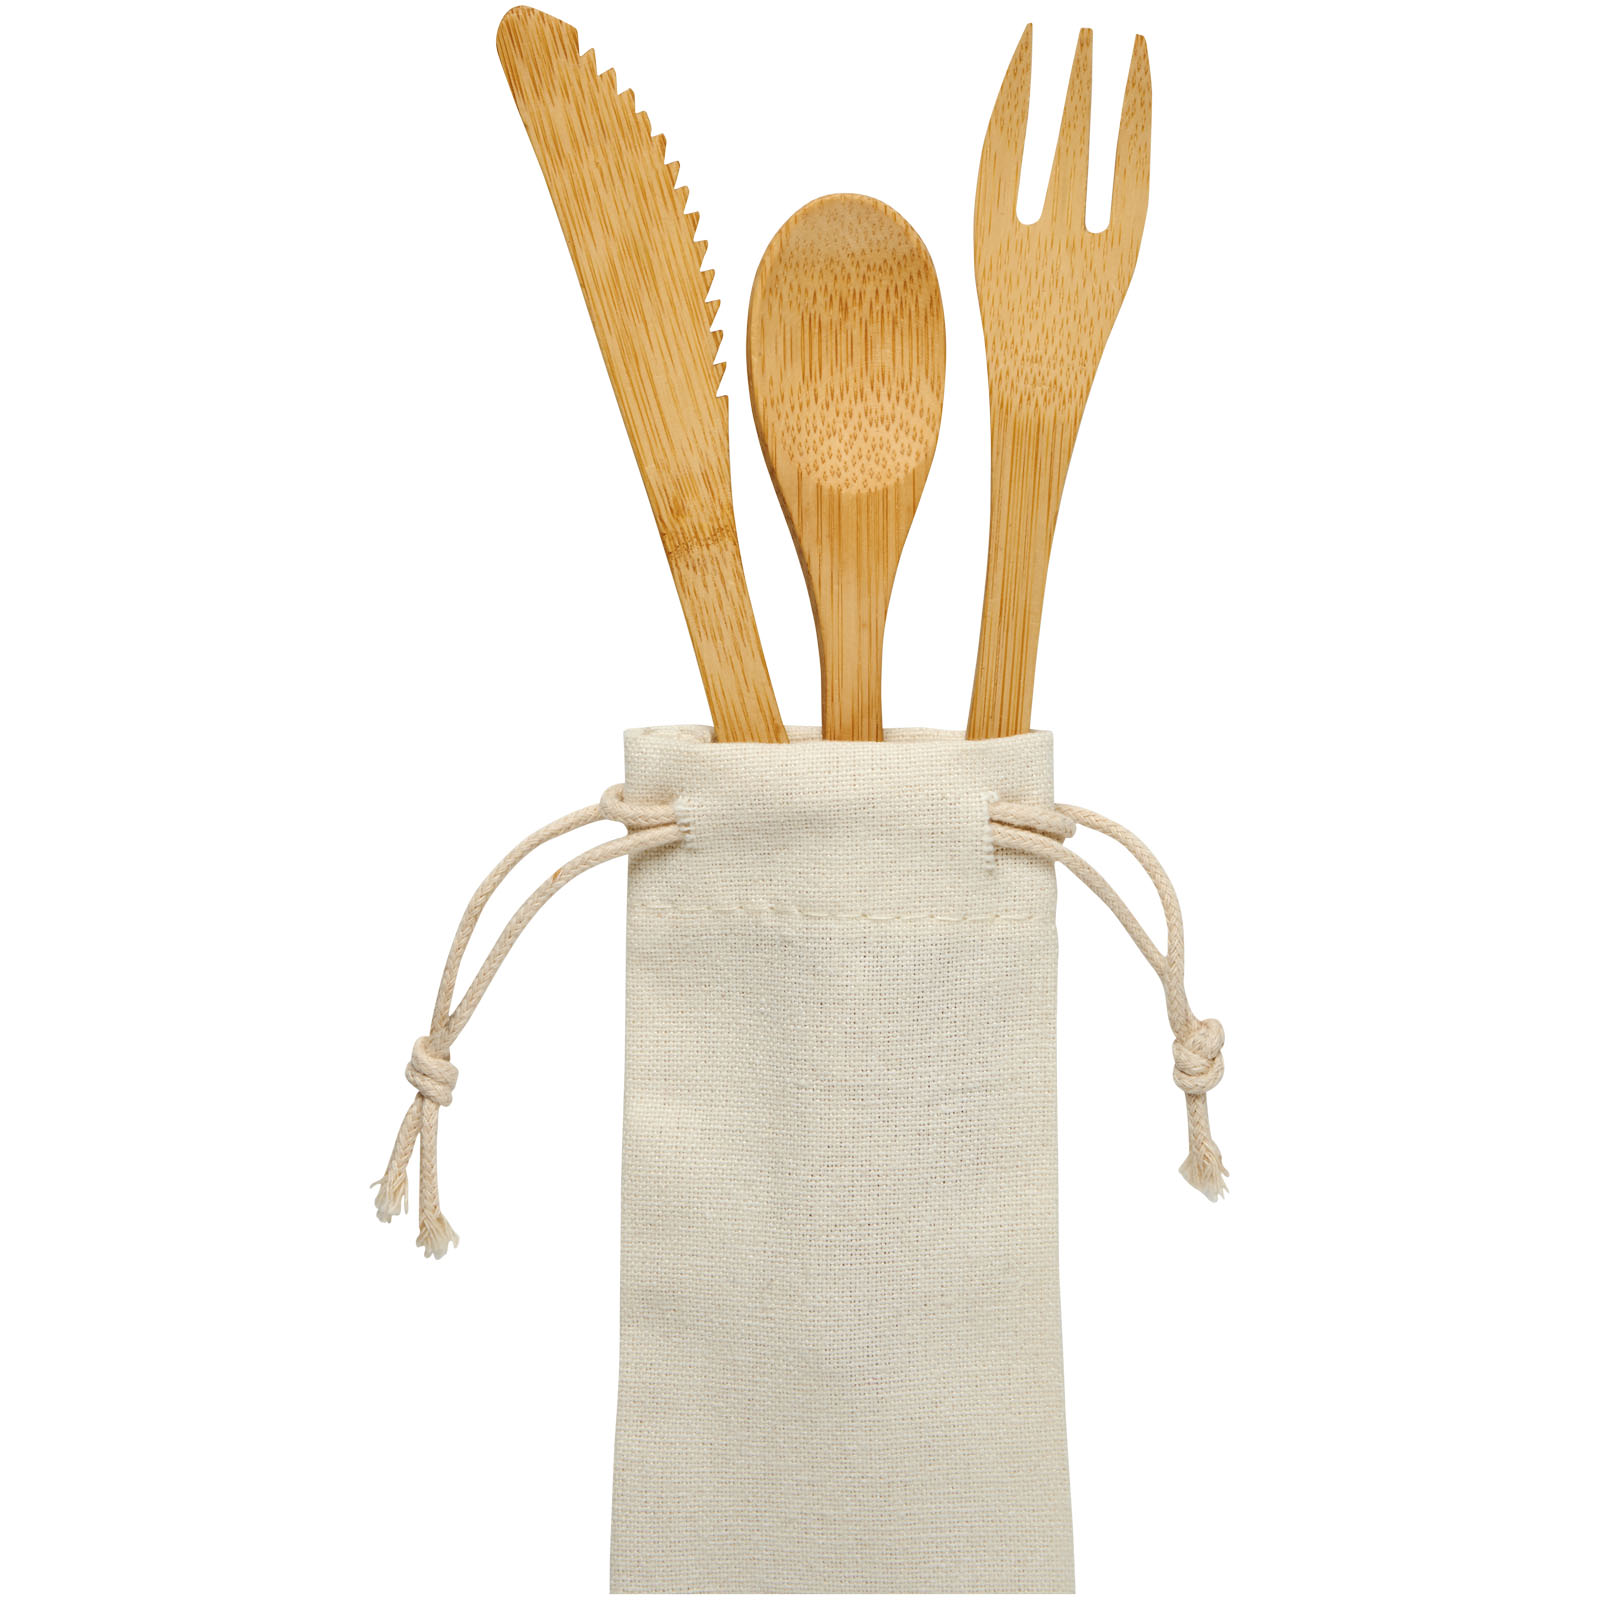 Advertising Kitchenware - Celuk bamboo cutlery set - 4